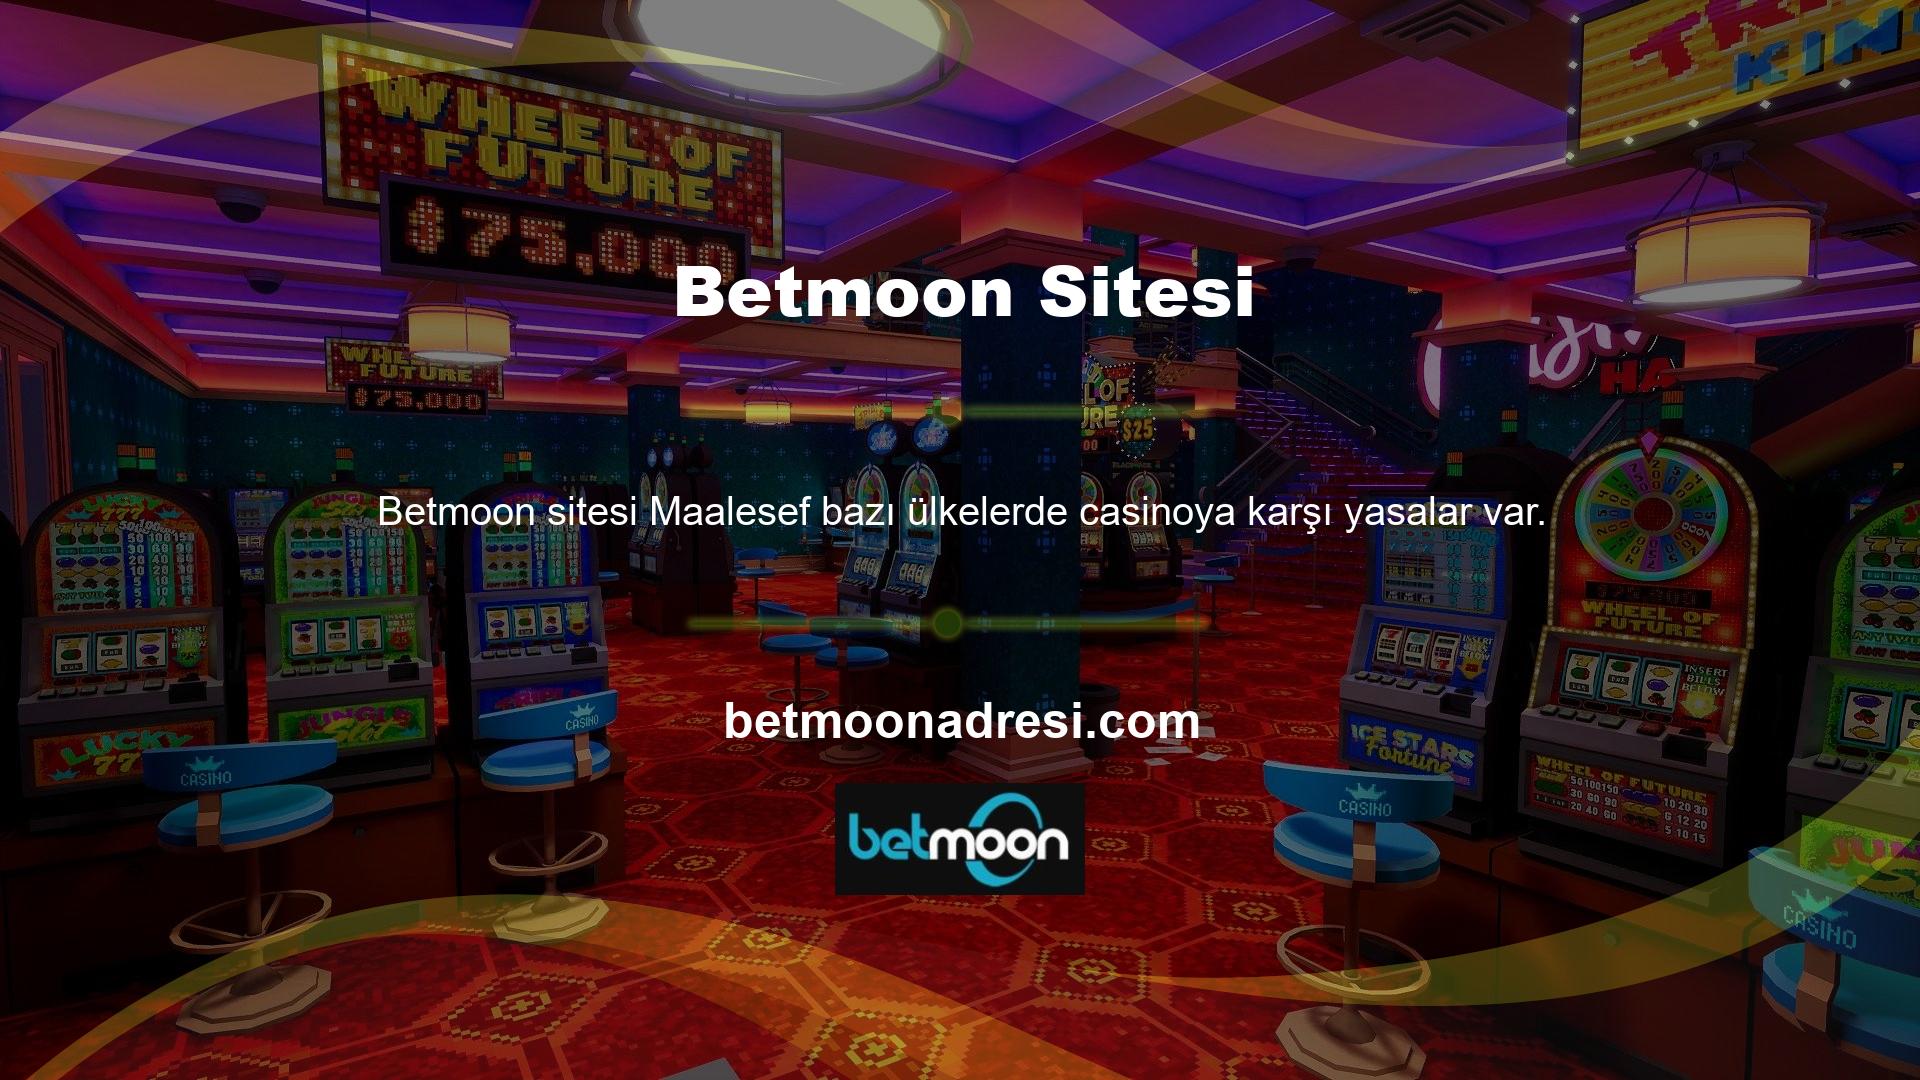 Betmoon sitesi resmi bir lisans altında faaliyet göstermektedir, ancak bazı oyun alanları günlük olarak kapatılmaktadır